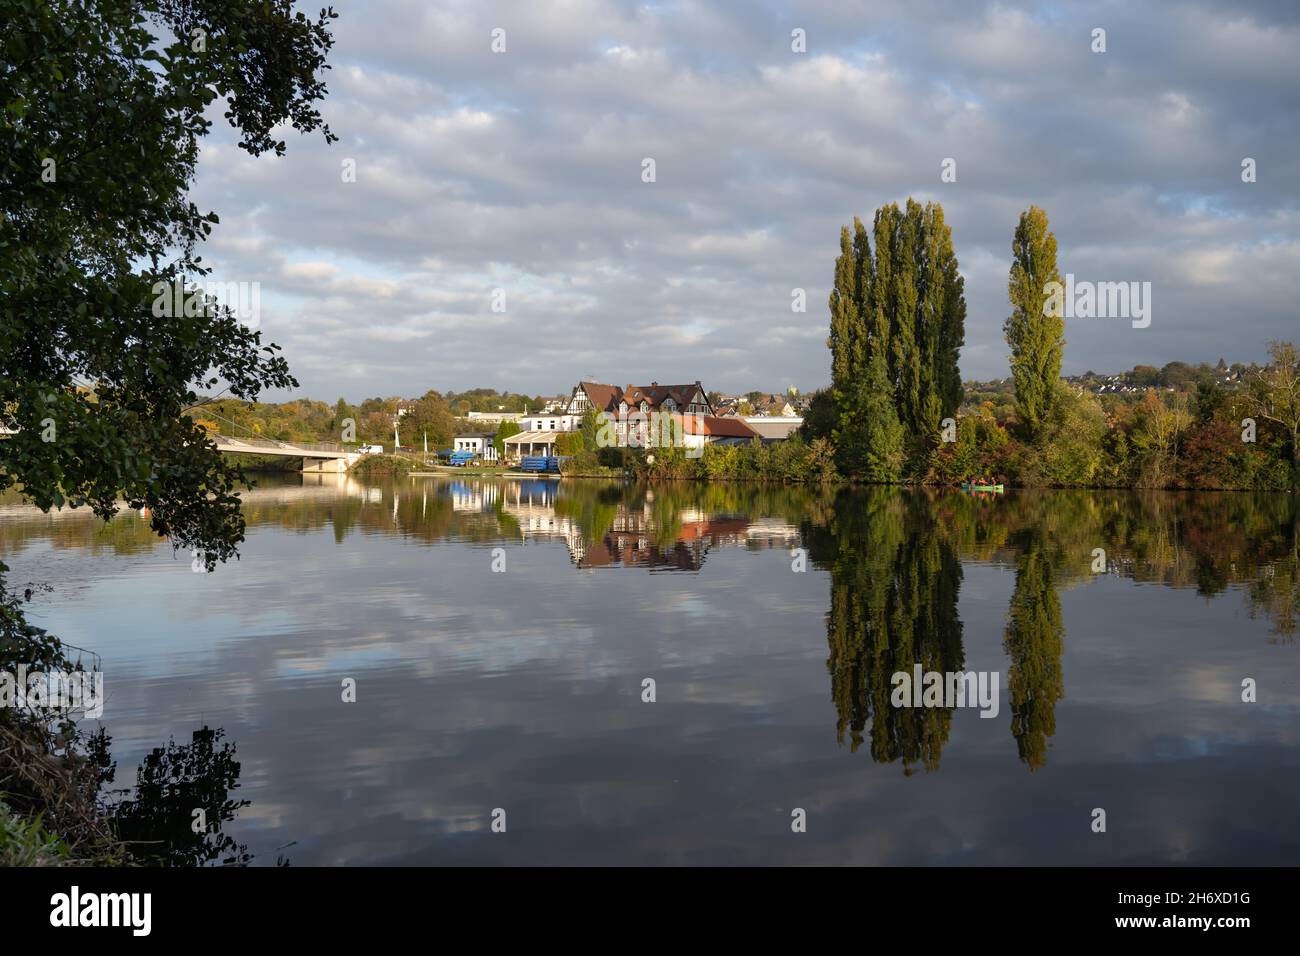 Vue sur la Ruhr sur le quartier d'Essen Kupferdreh en Allemagne.Le paysage se reflète dans l'eau.Panorama typique de l'automne. Banque D'Images